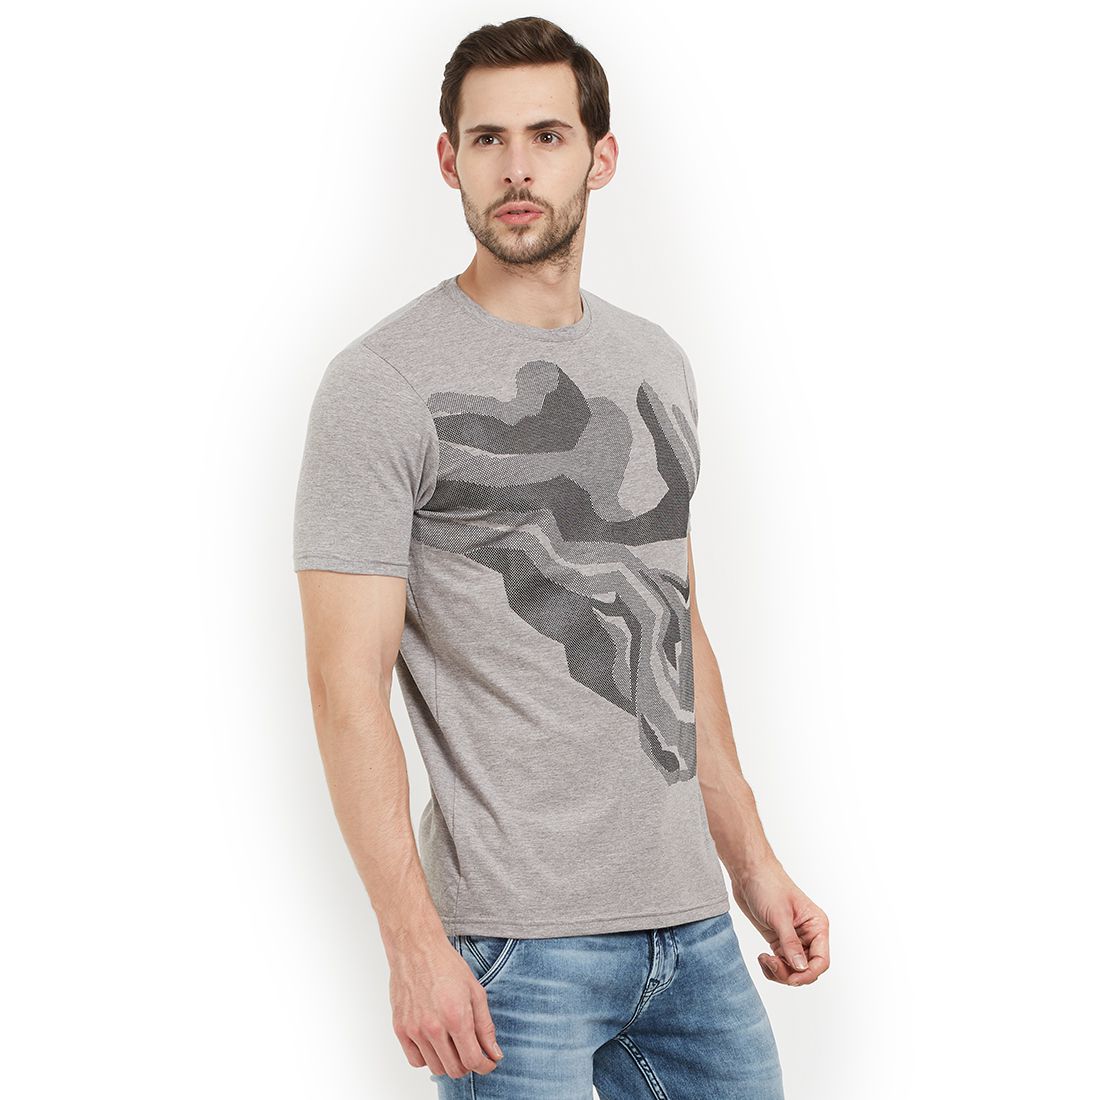 EASIES by KILLER Grey Half Sleeve T-Shirt - Buy EASIES by KILLER Grey ...